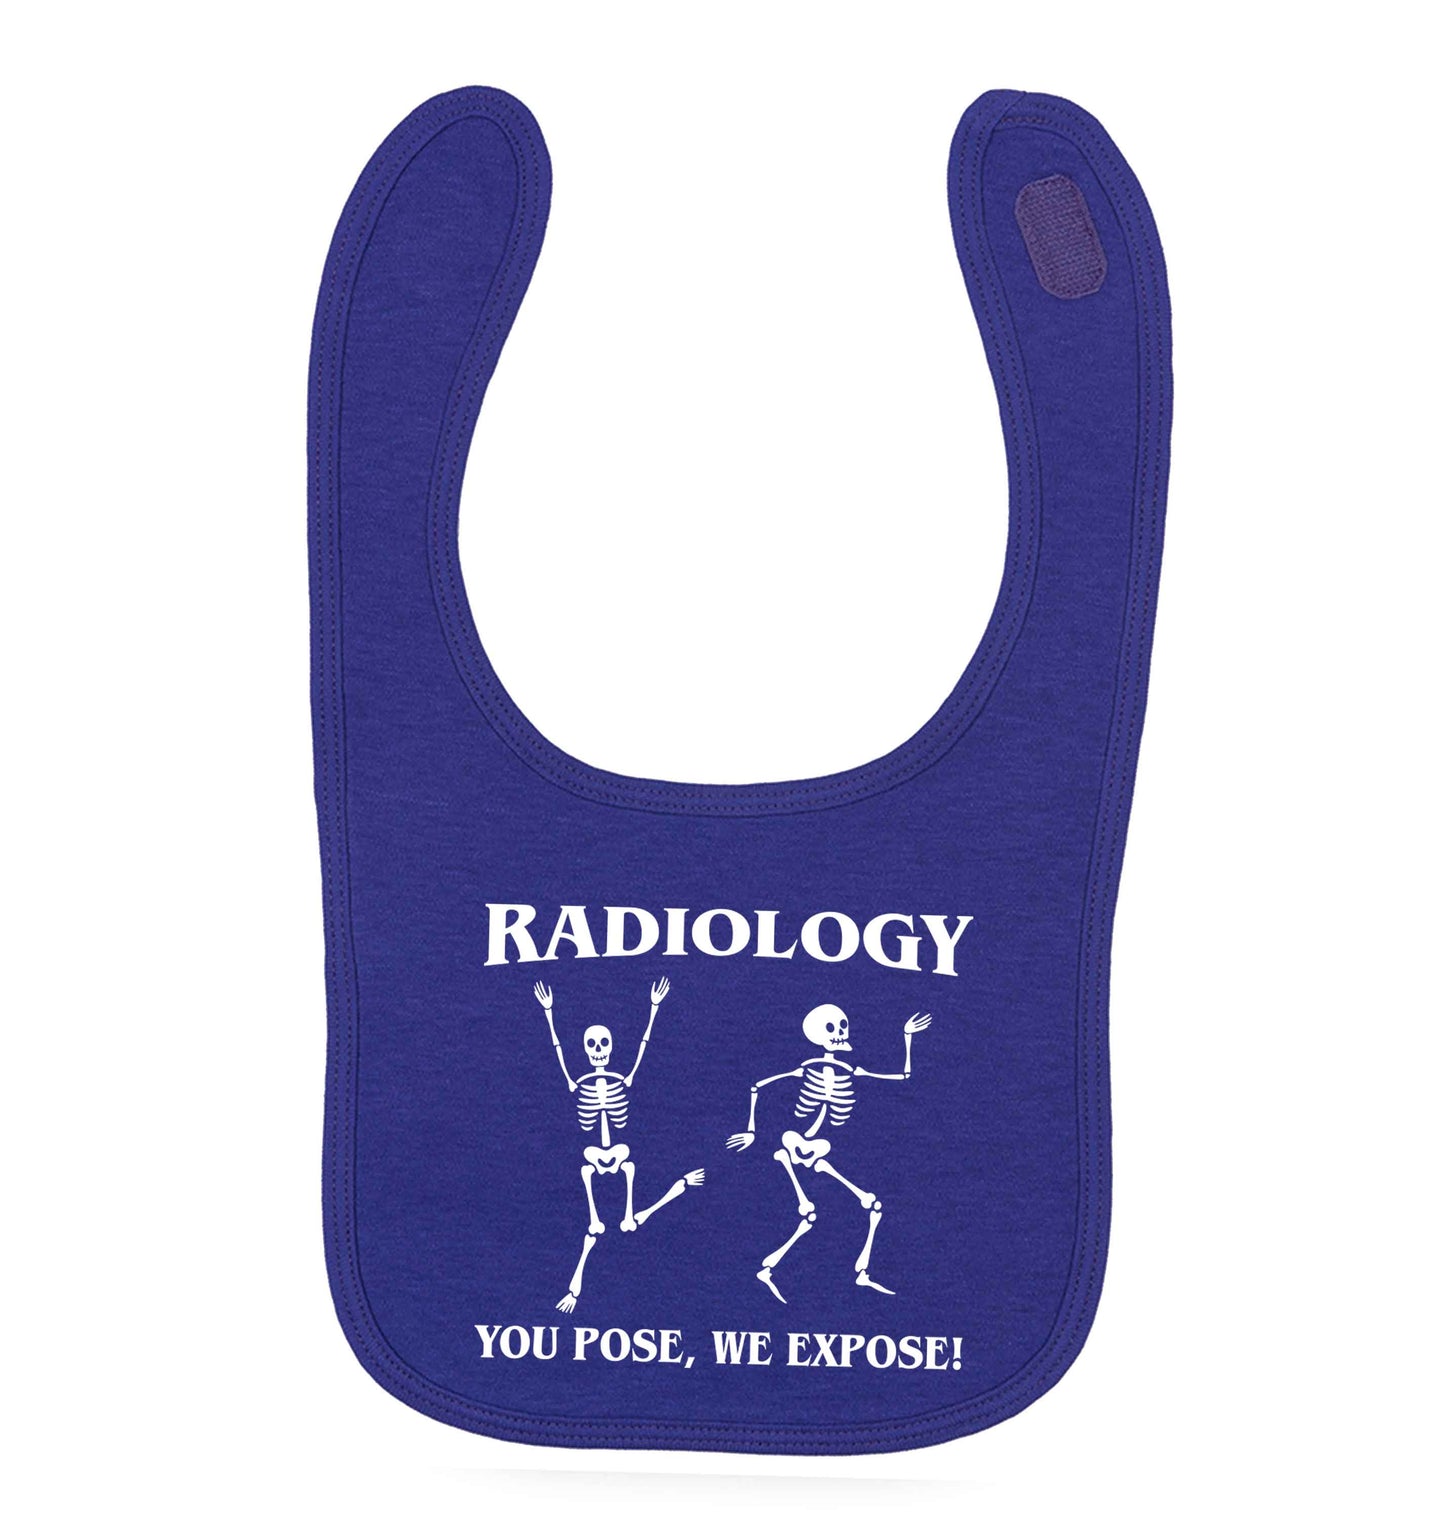 Radiology you pose we expose purple baby bib